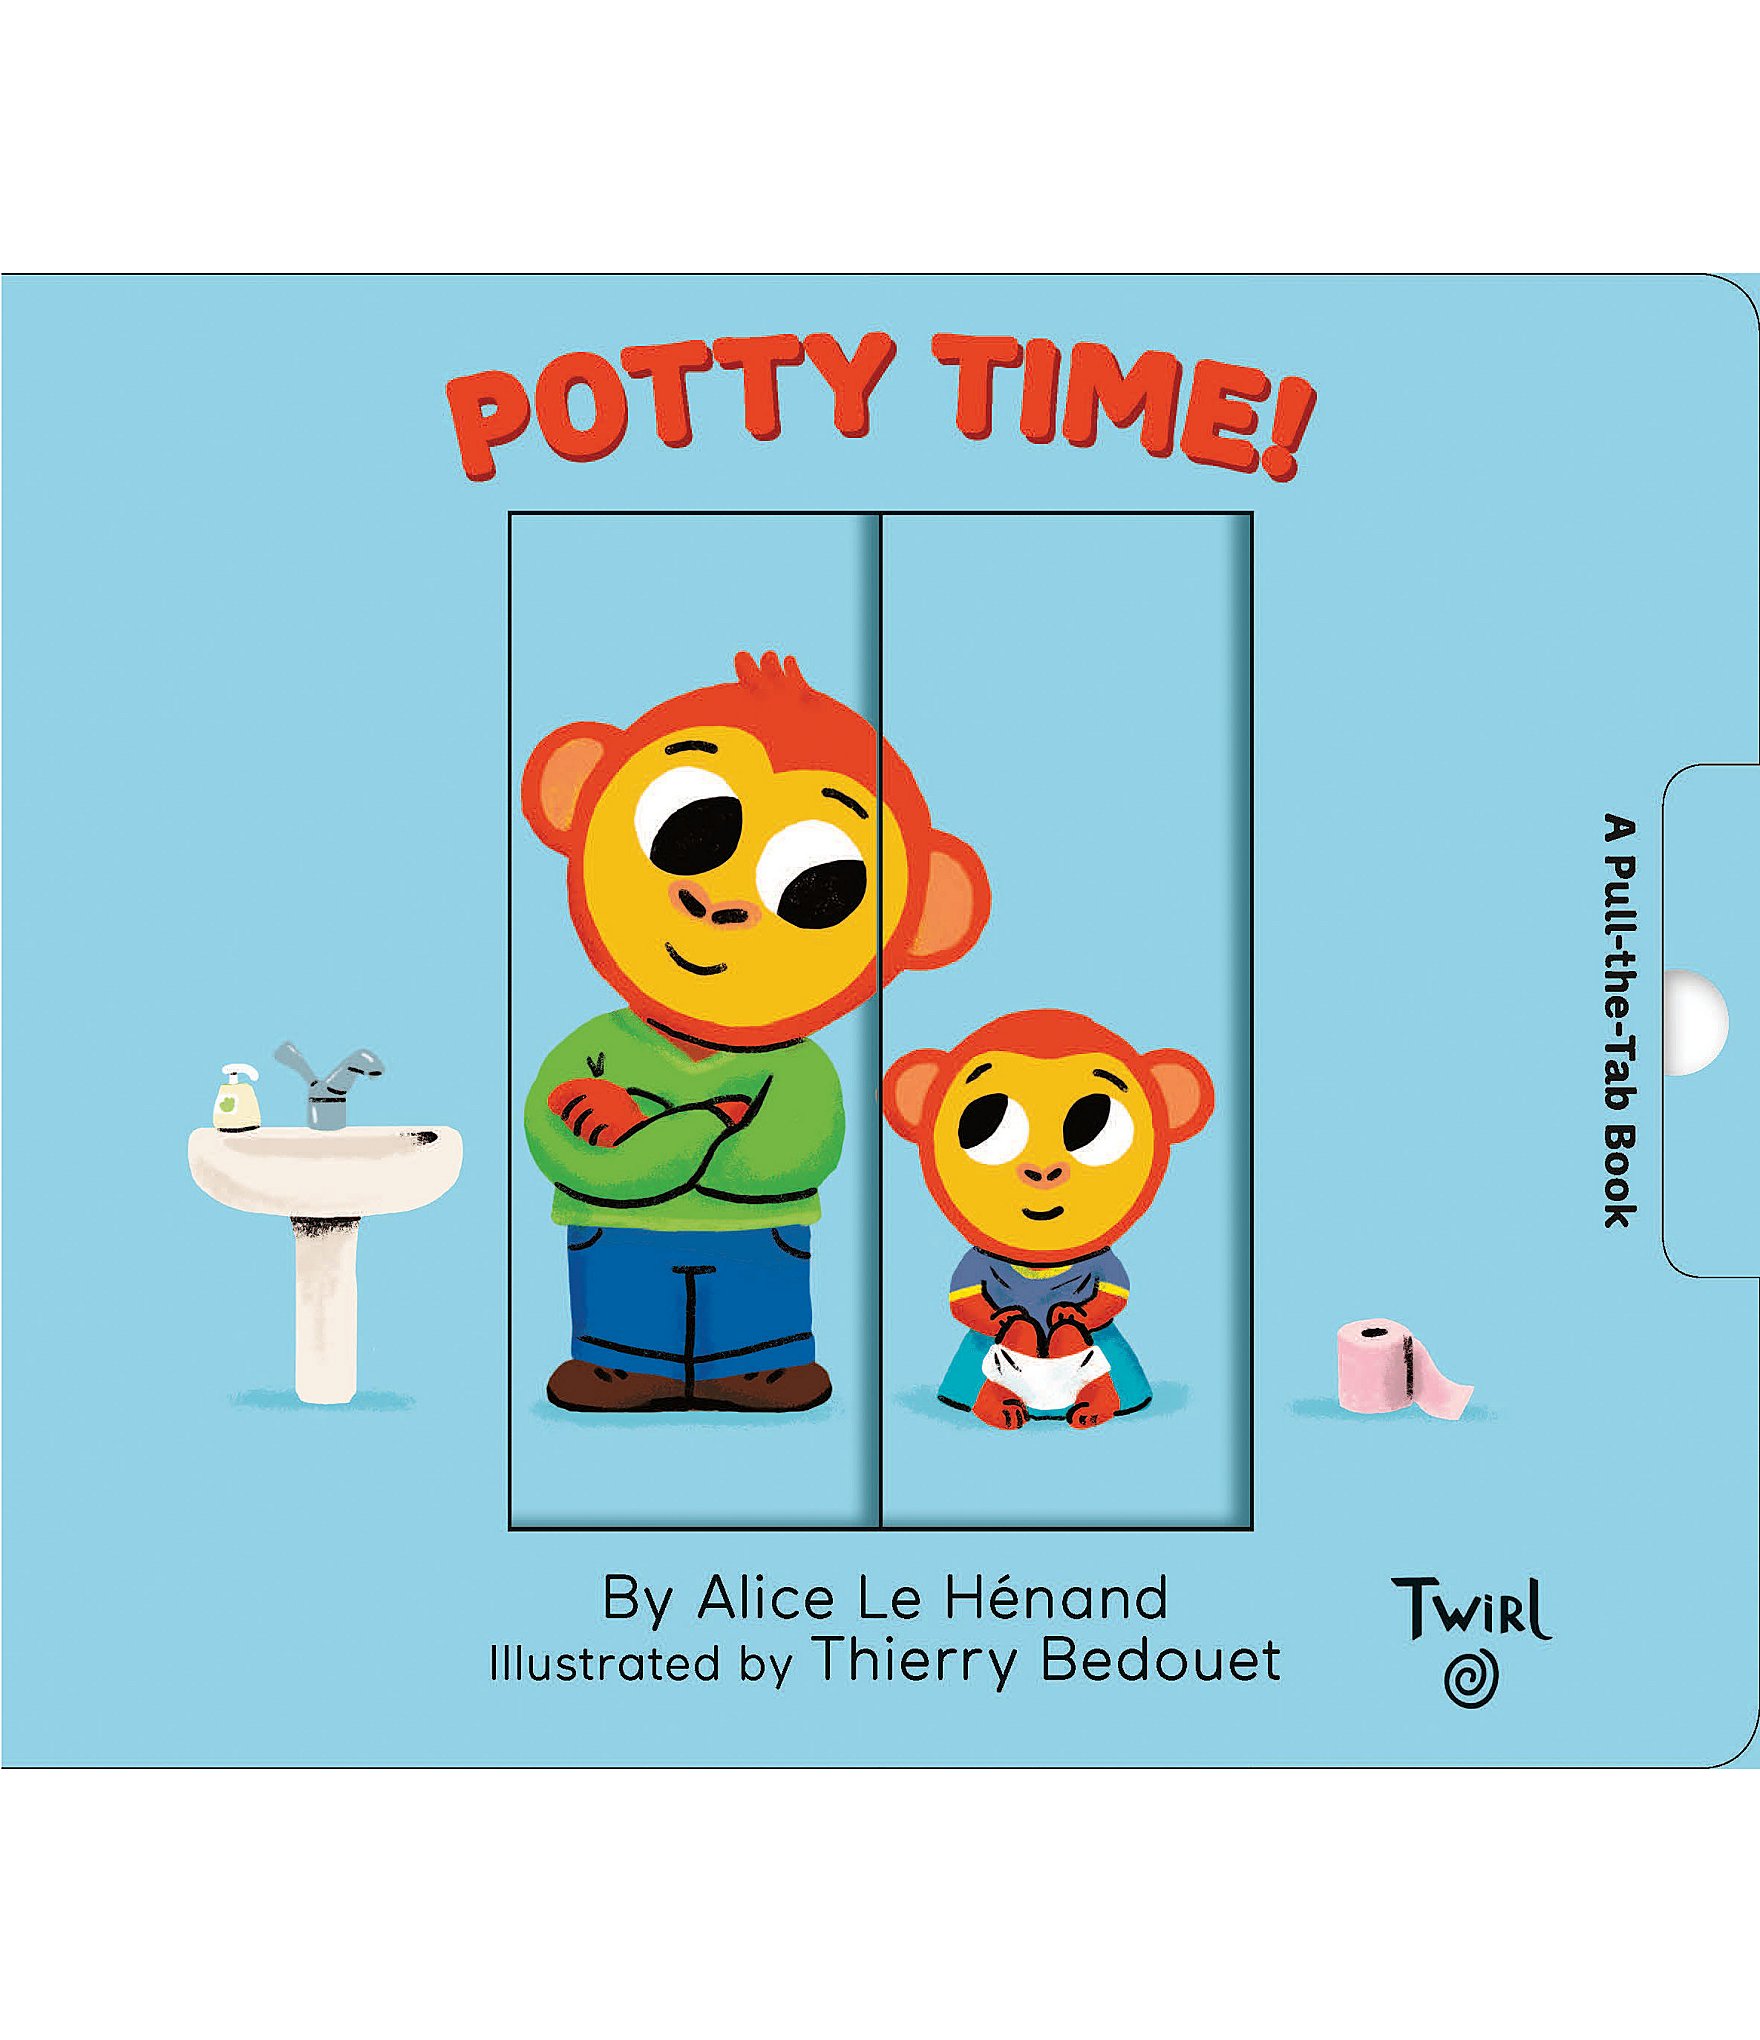 Melissa & Doug Poke-A-Dot: 10 Little Monkeys Books